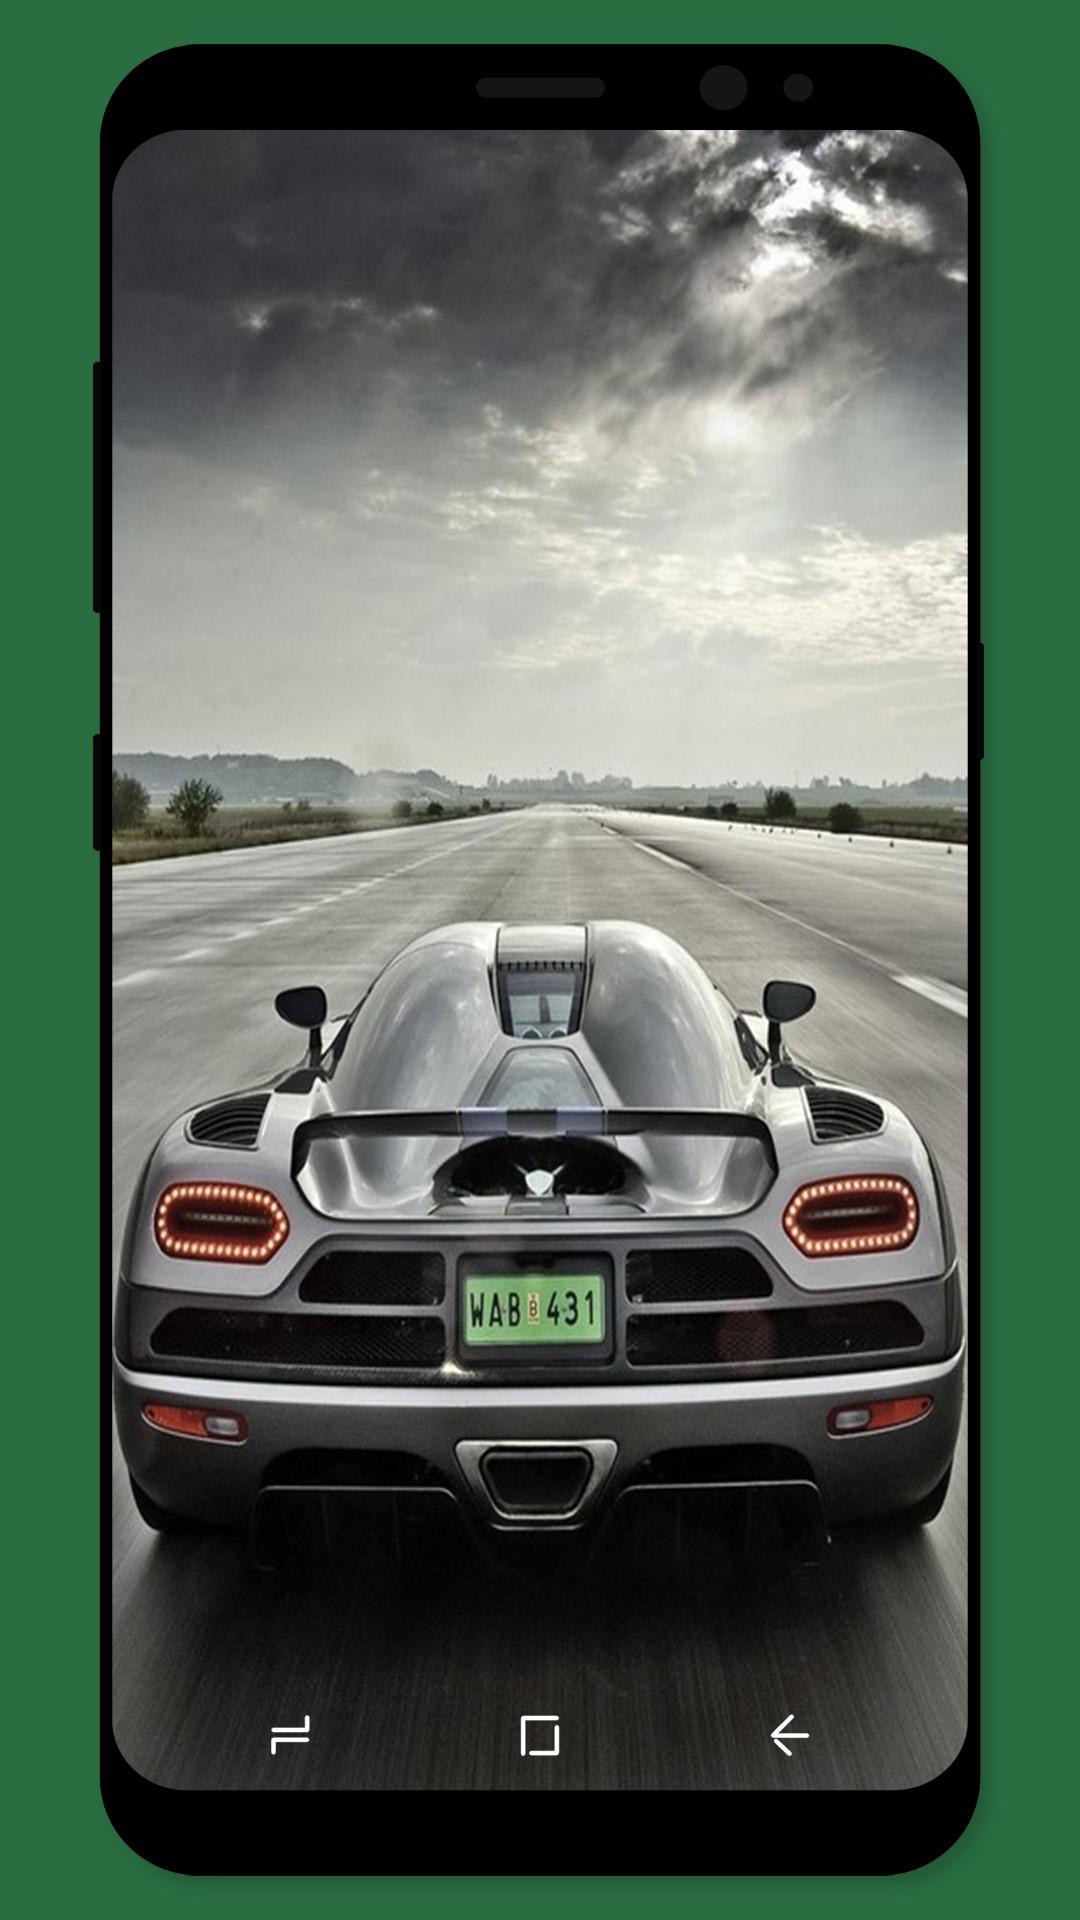 無料でスーパーカー壁紙 Apkアプリの最新版 Apk1 3 10をダウンロードー Android用 スーパーカー壁紙 Apk の最新バージョンをインストール Apkfab Com Jp